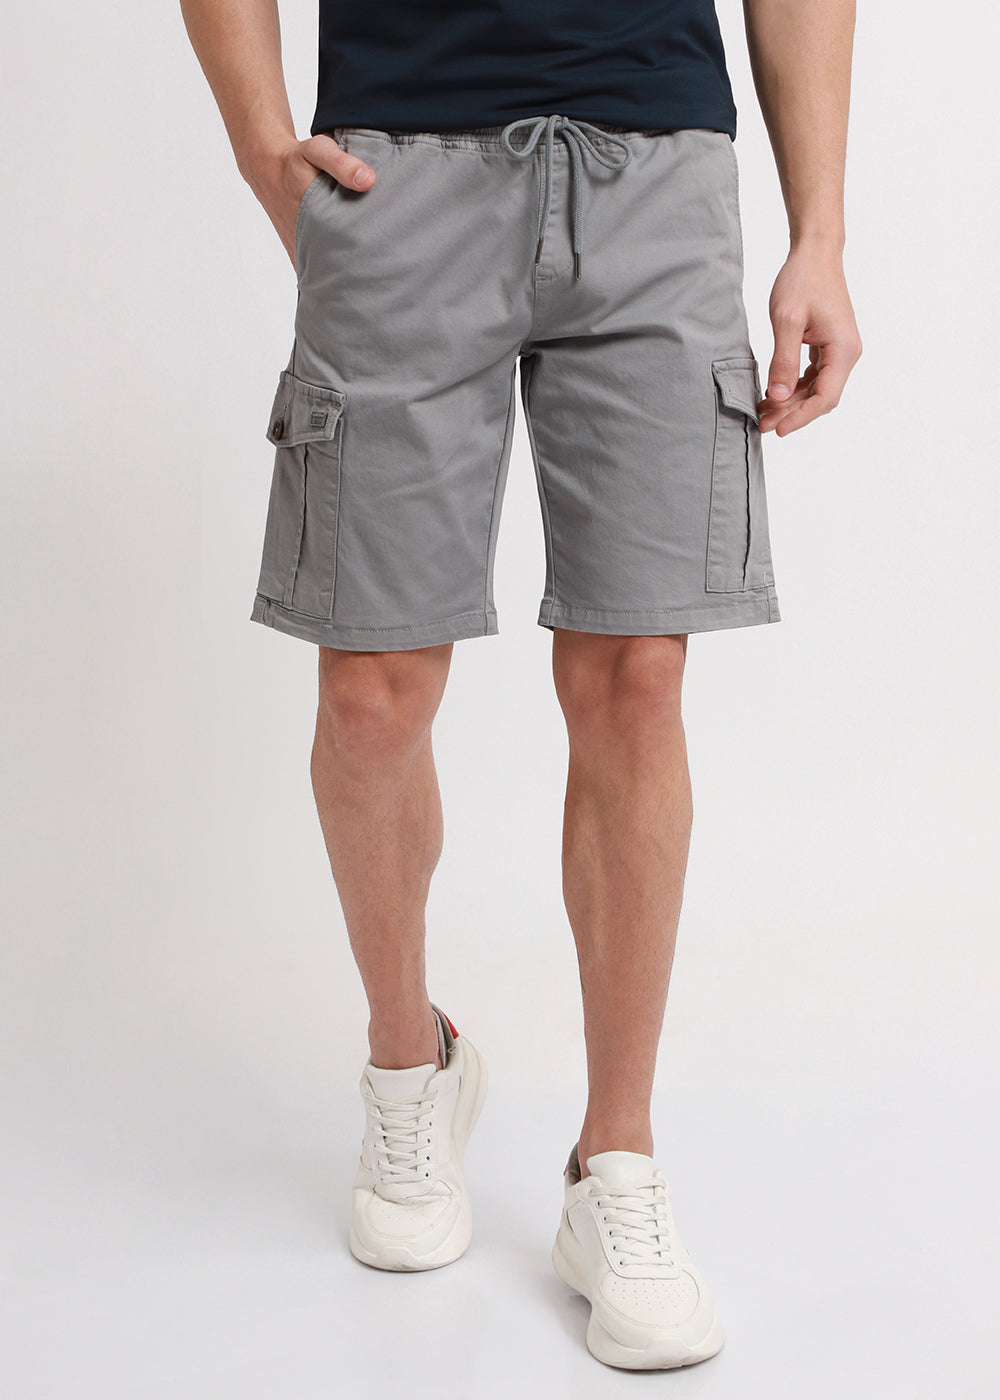 Brocky Grey Cotton Cargo Shorts4